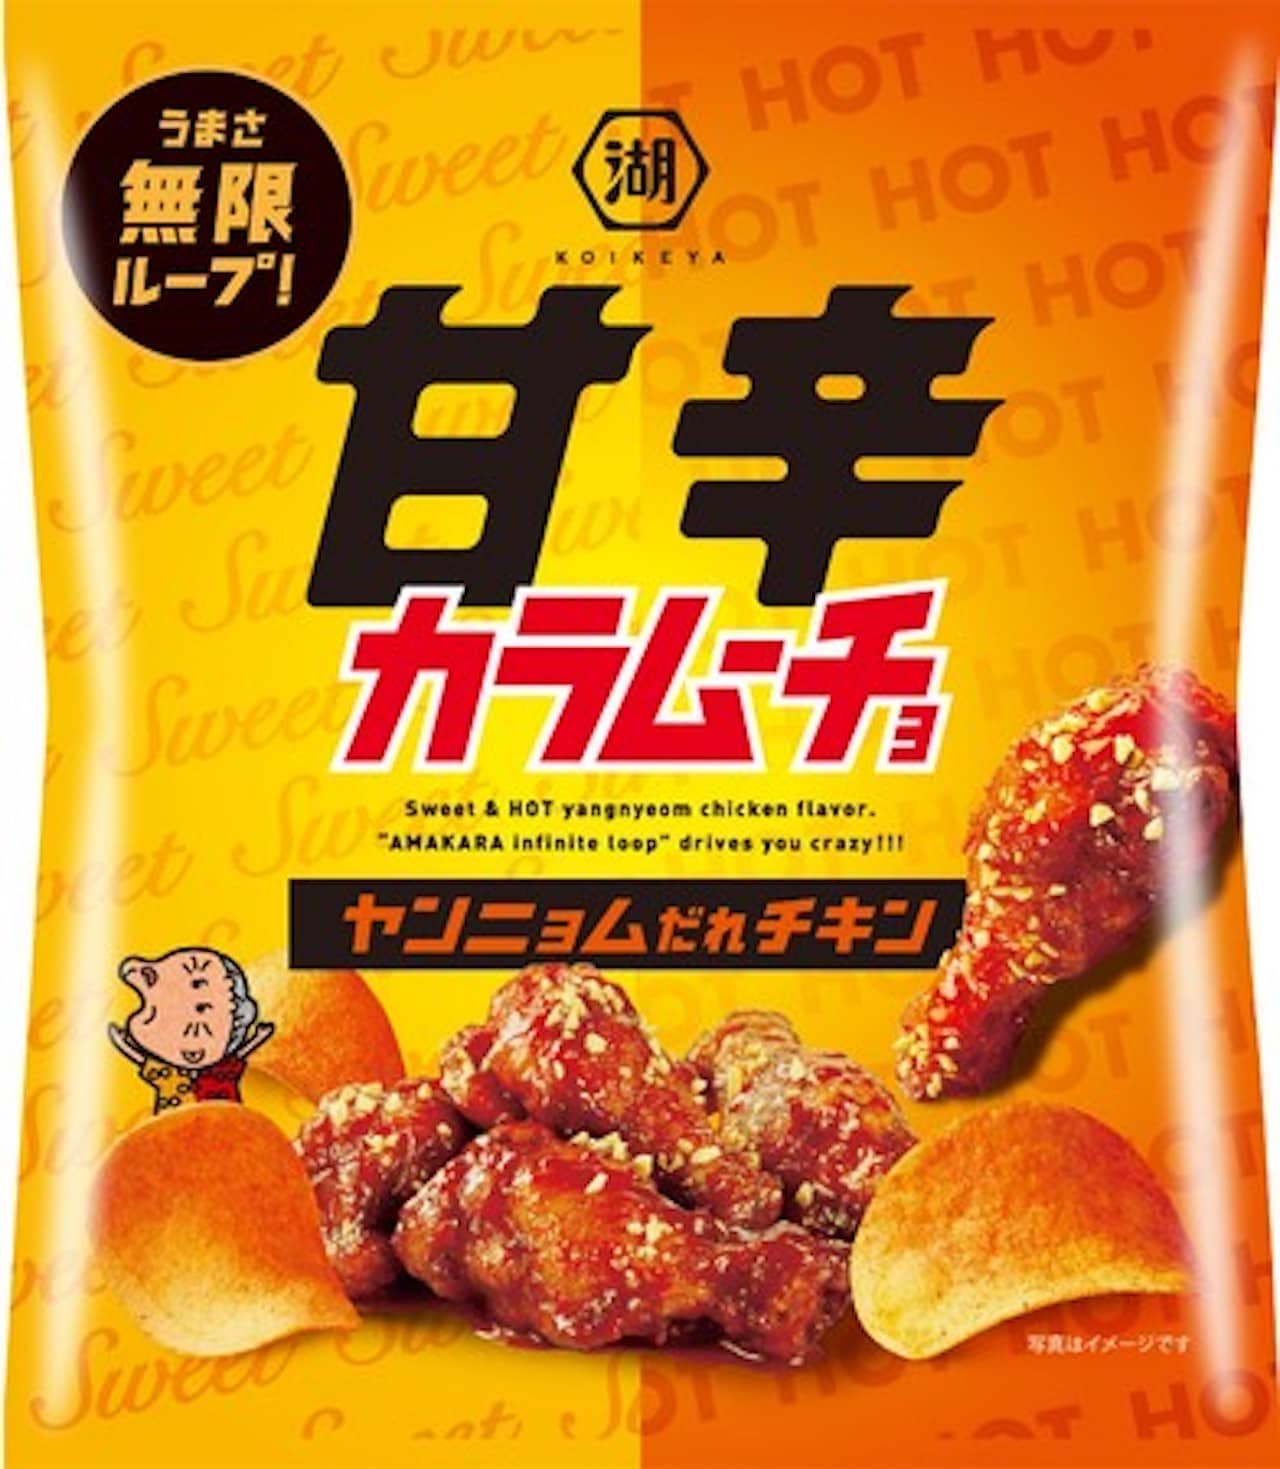 Koikeya "Sweet and spicy Karamucho Yangnyeom who chicken"